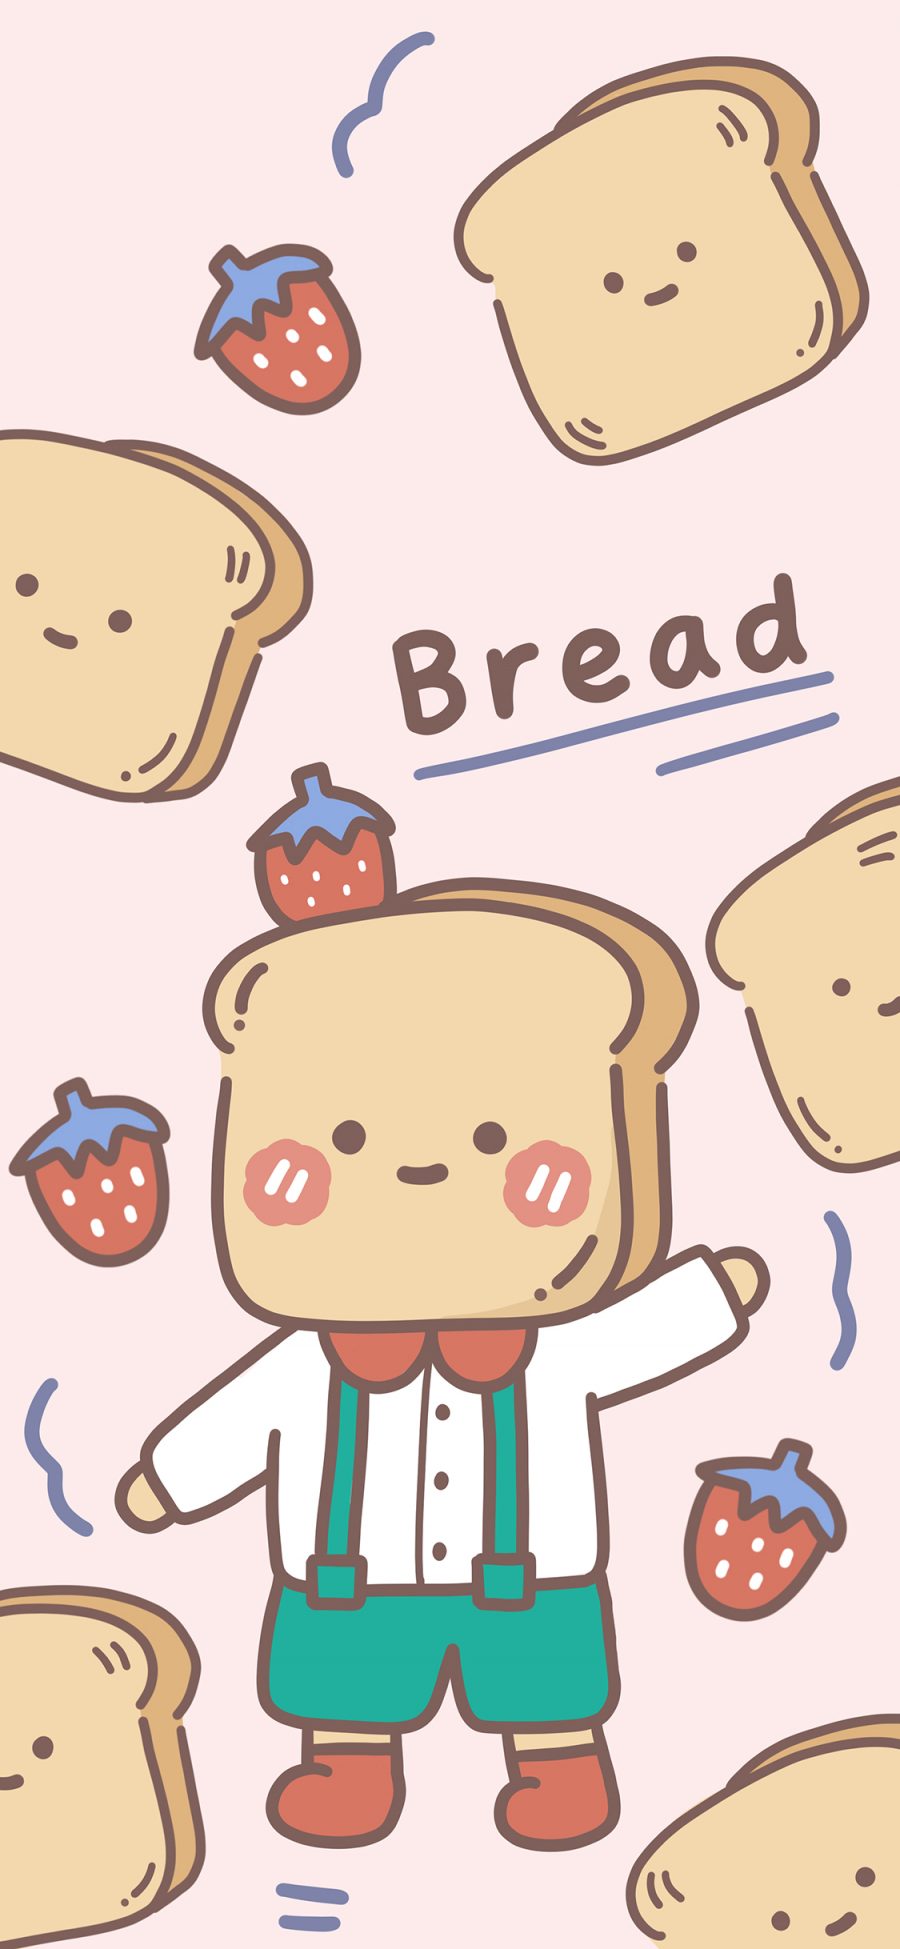 [2436×1125]平铺 面包 可爱 bread 苹果手机动漫壁纸图片